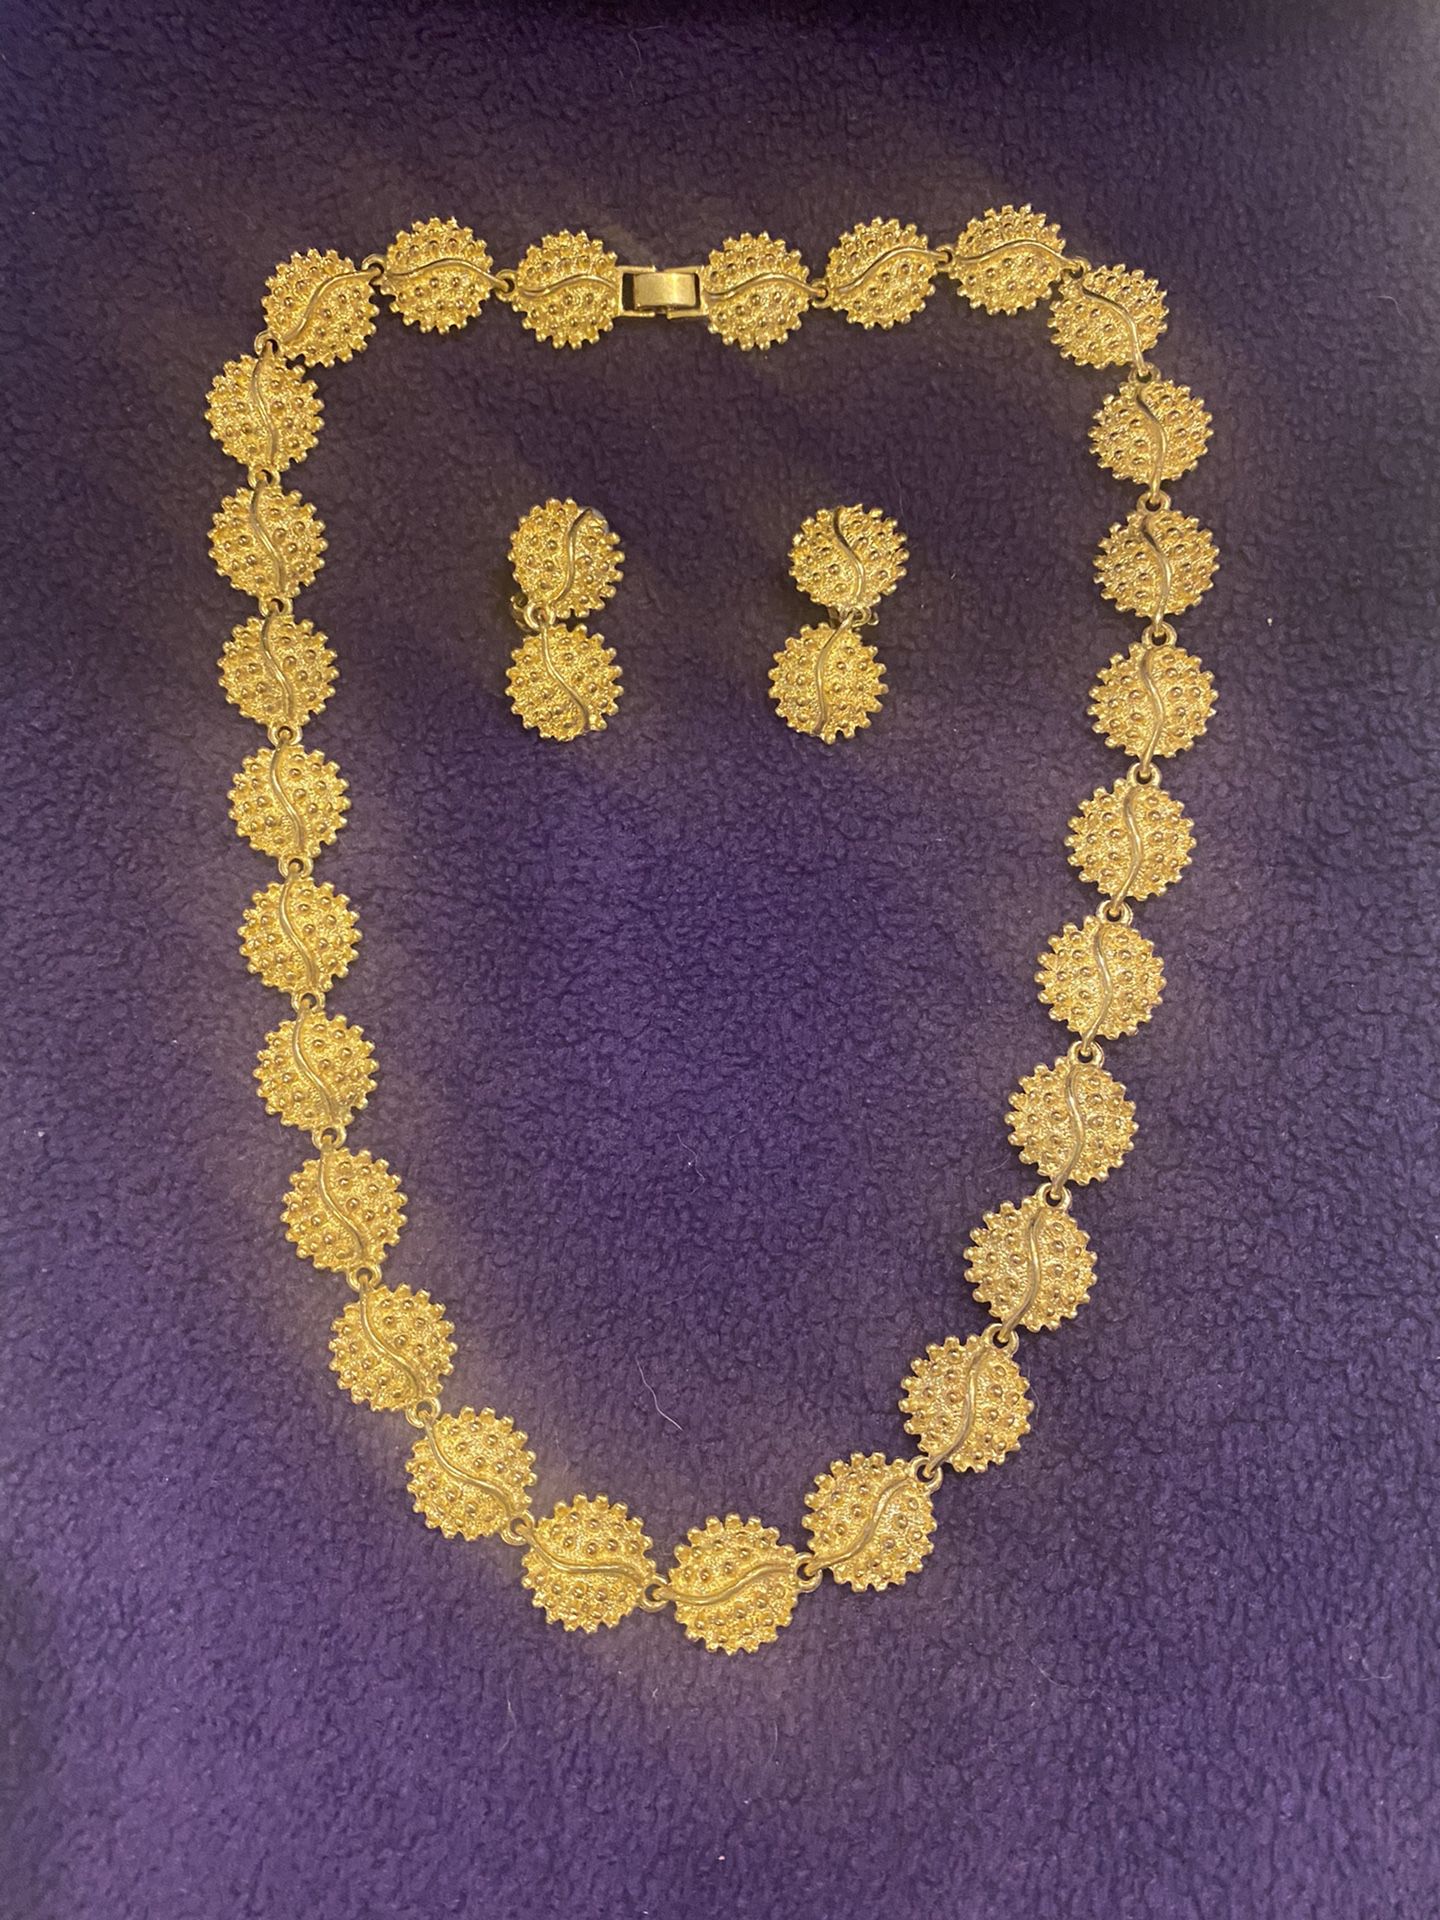 Necklace sets 